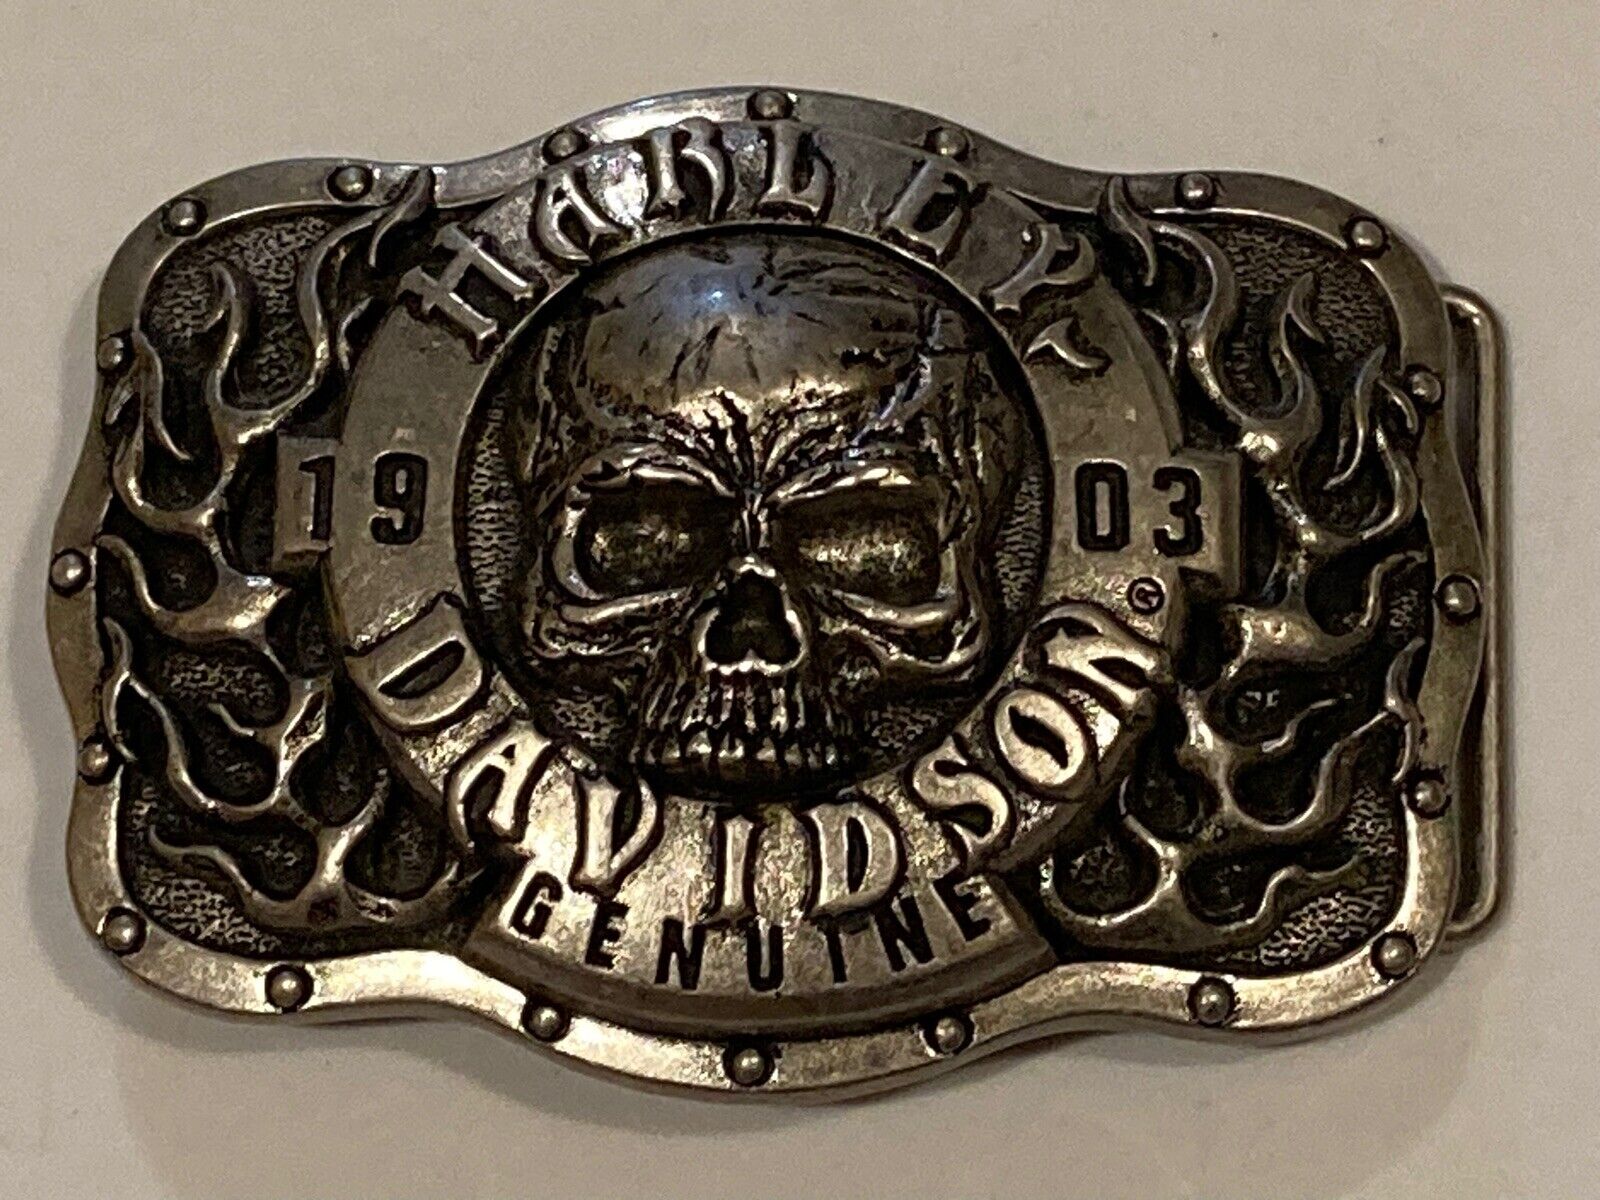 2011 Harley-Davidson Belt Buckle Genuine Skull Flames 1903